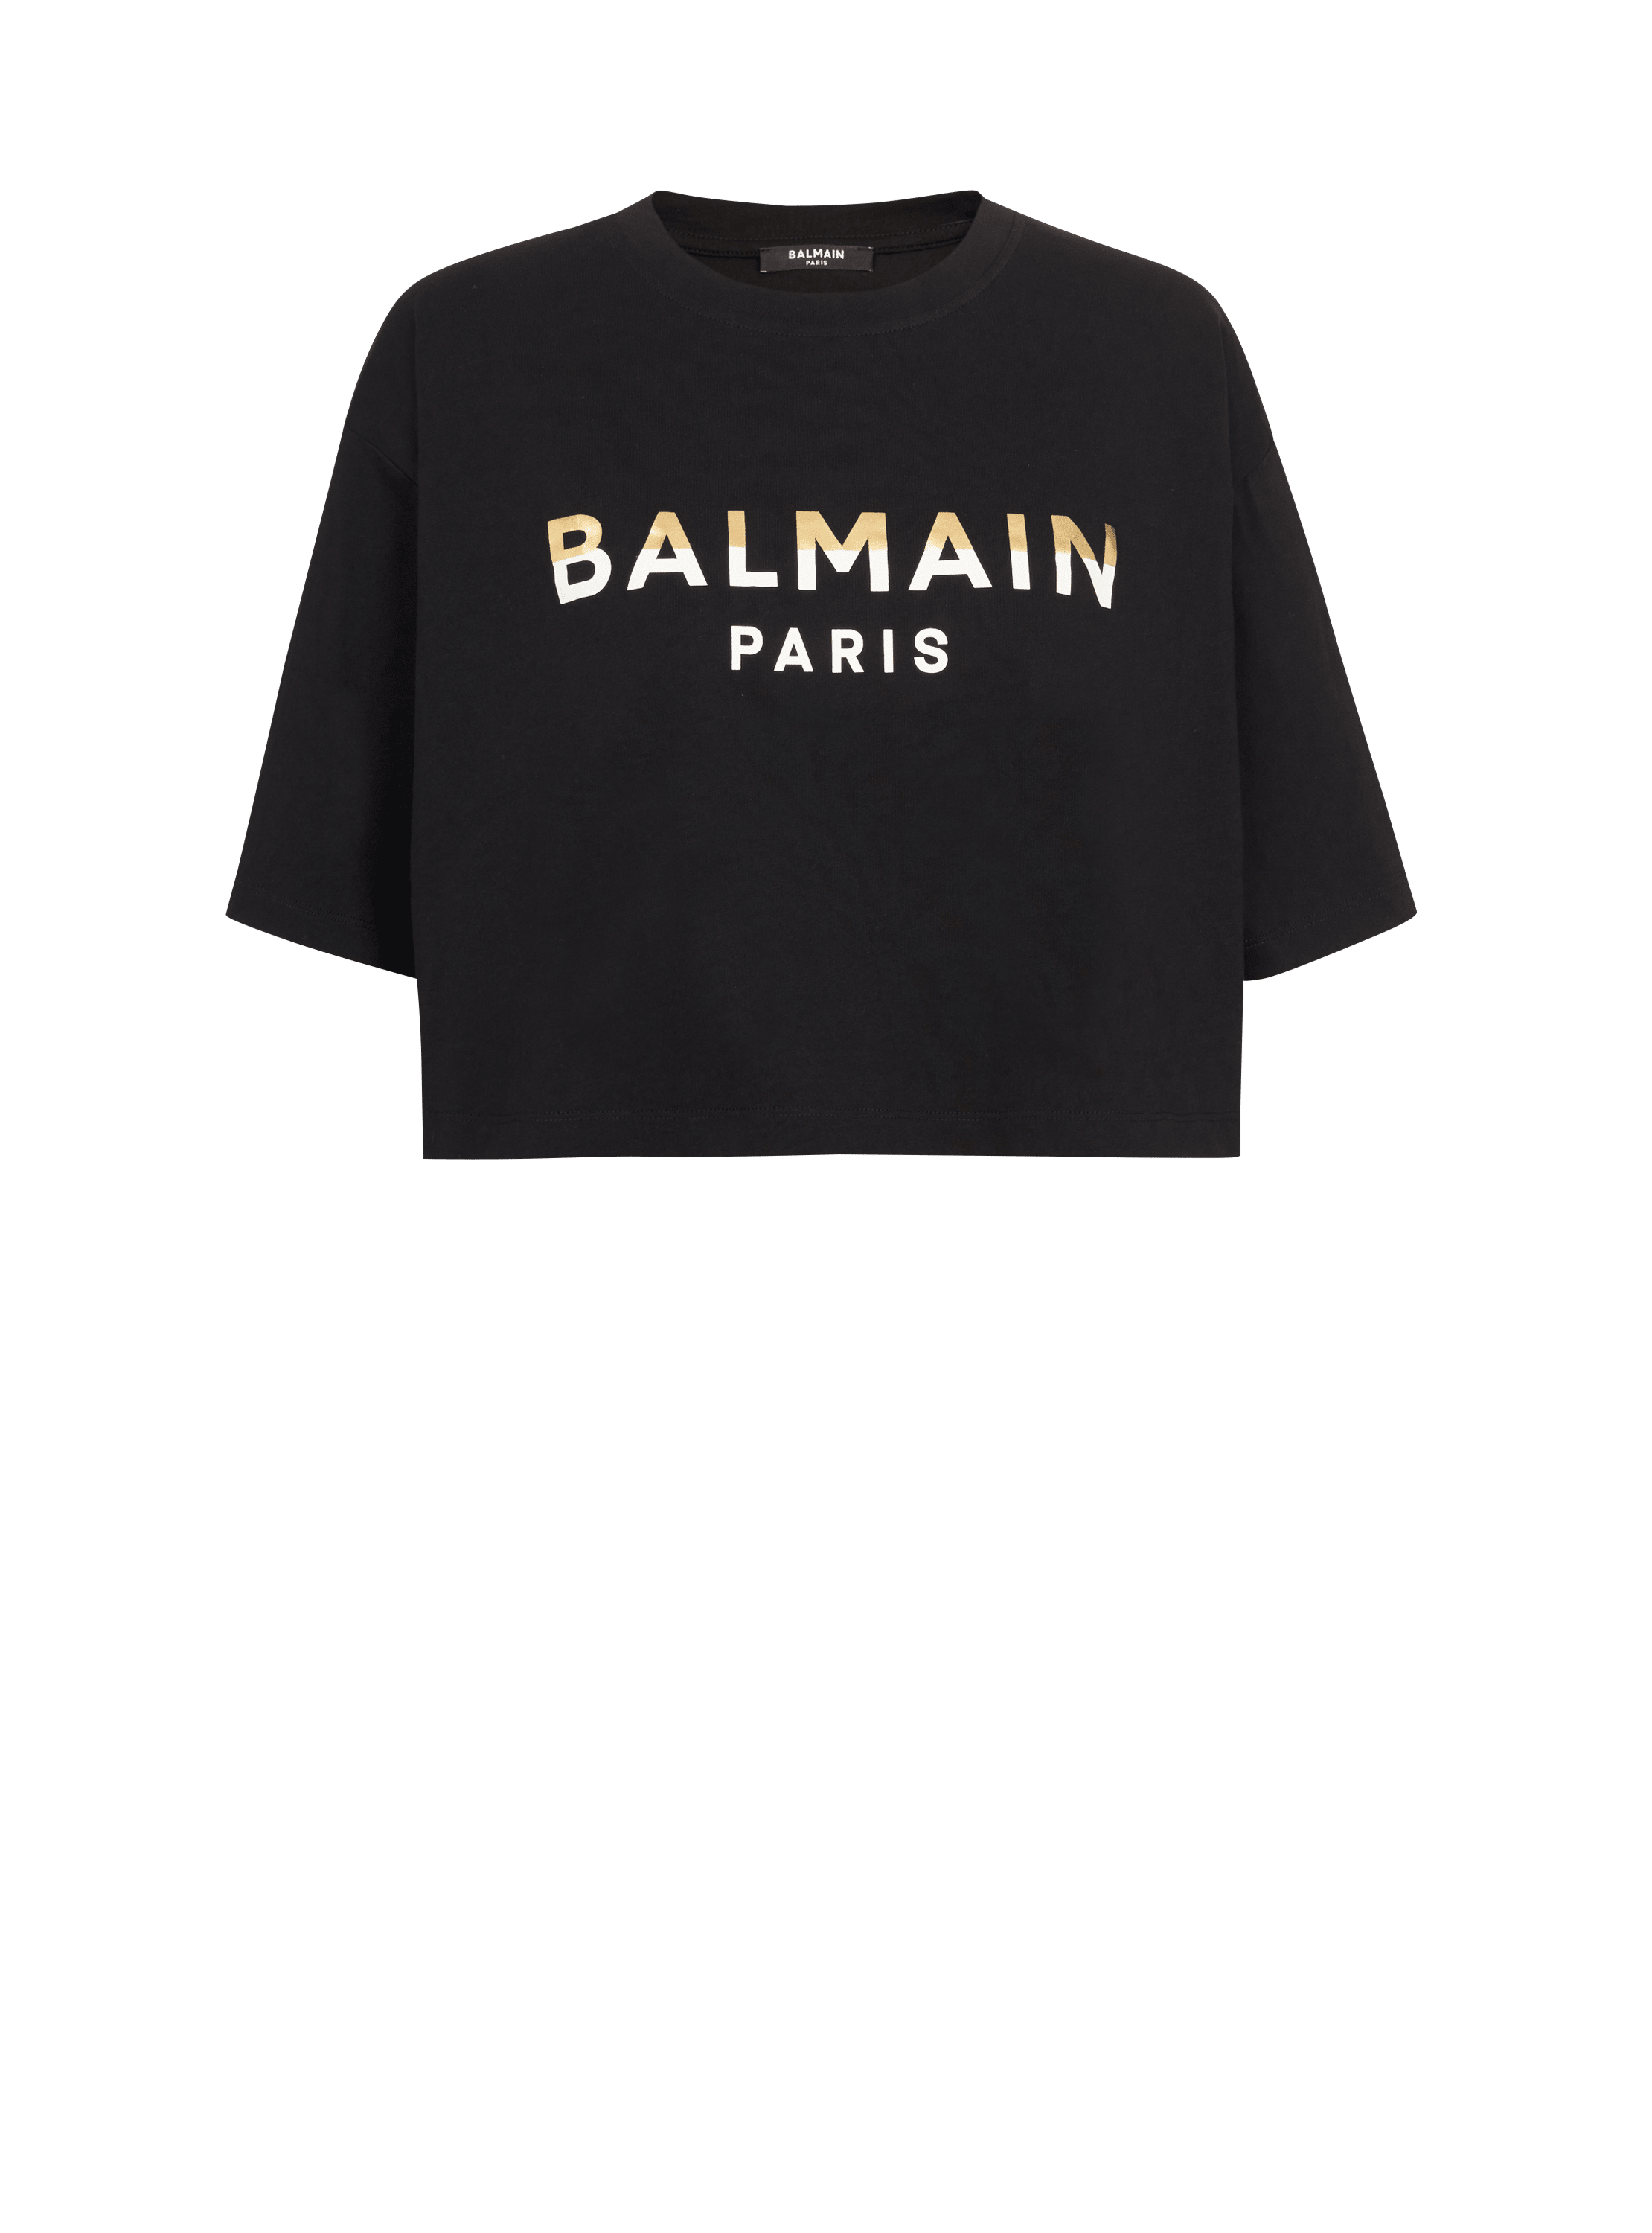 Kurzes Balmain Paris T-Shirt